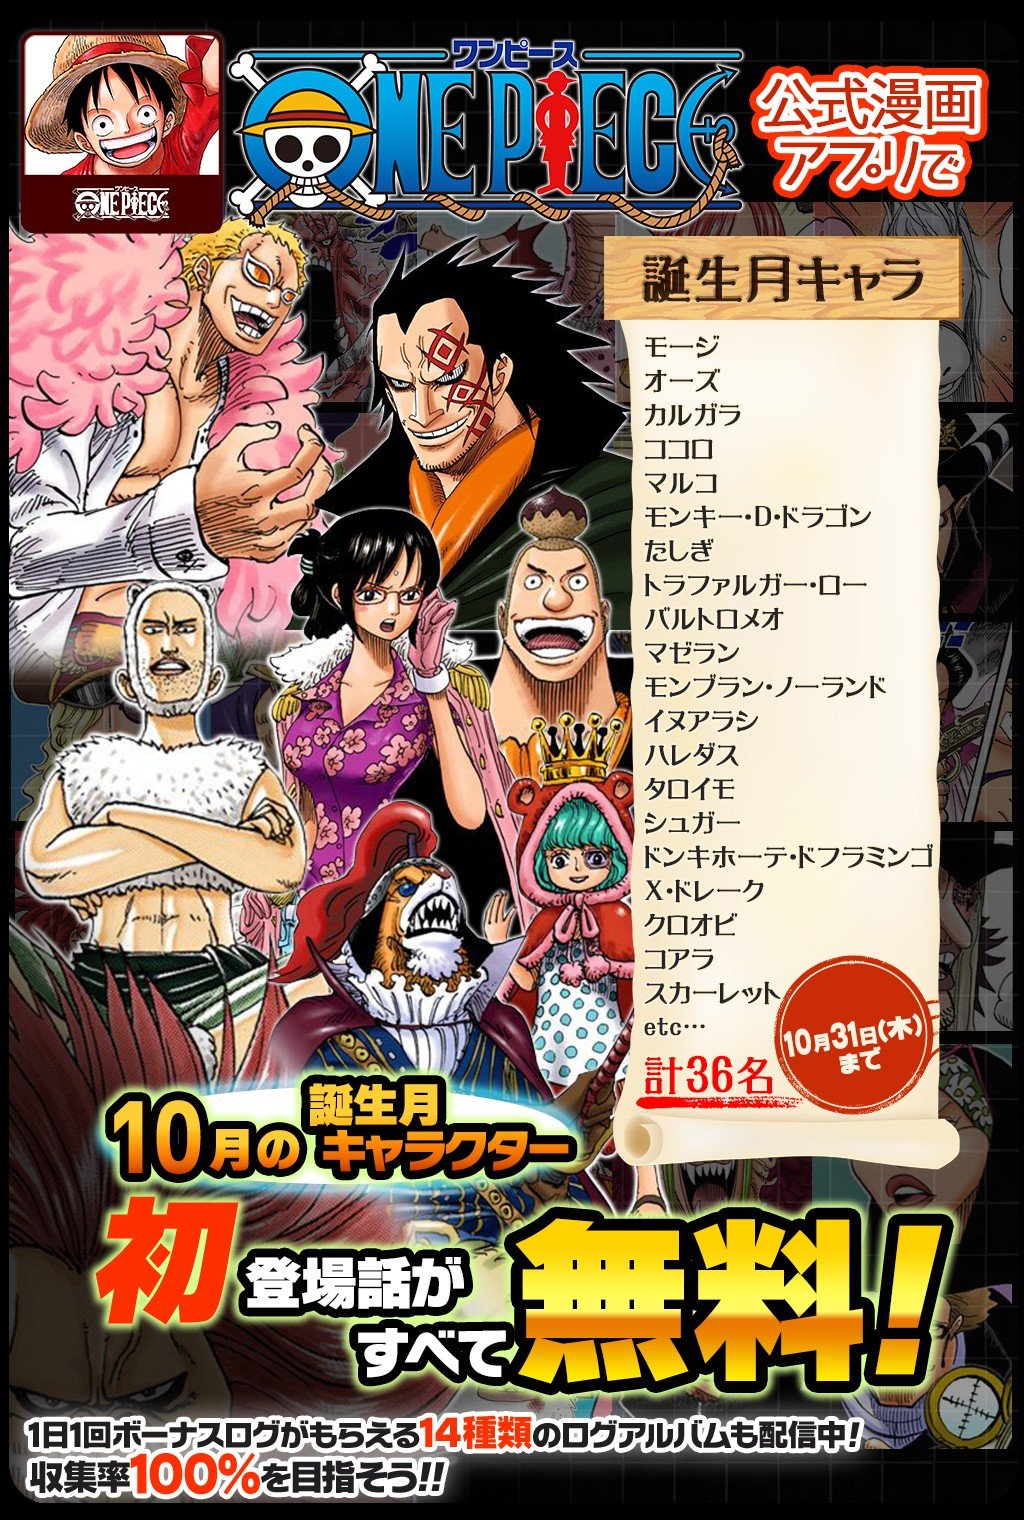 One Piece スタッフ 公式 Official 10 31 木 まで 合計30話以上無料 One Piece公式漫画アプリで 10月誕生フェア 開催中 10月に誕生日を迎えるキャラクターの初登場話をフルカラーで読めるぞ T Co F3rqjl4pe4 セリフなしの登場話も